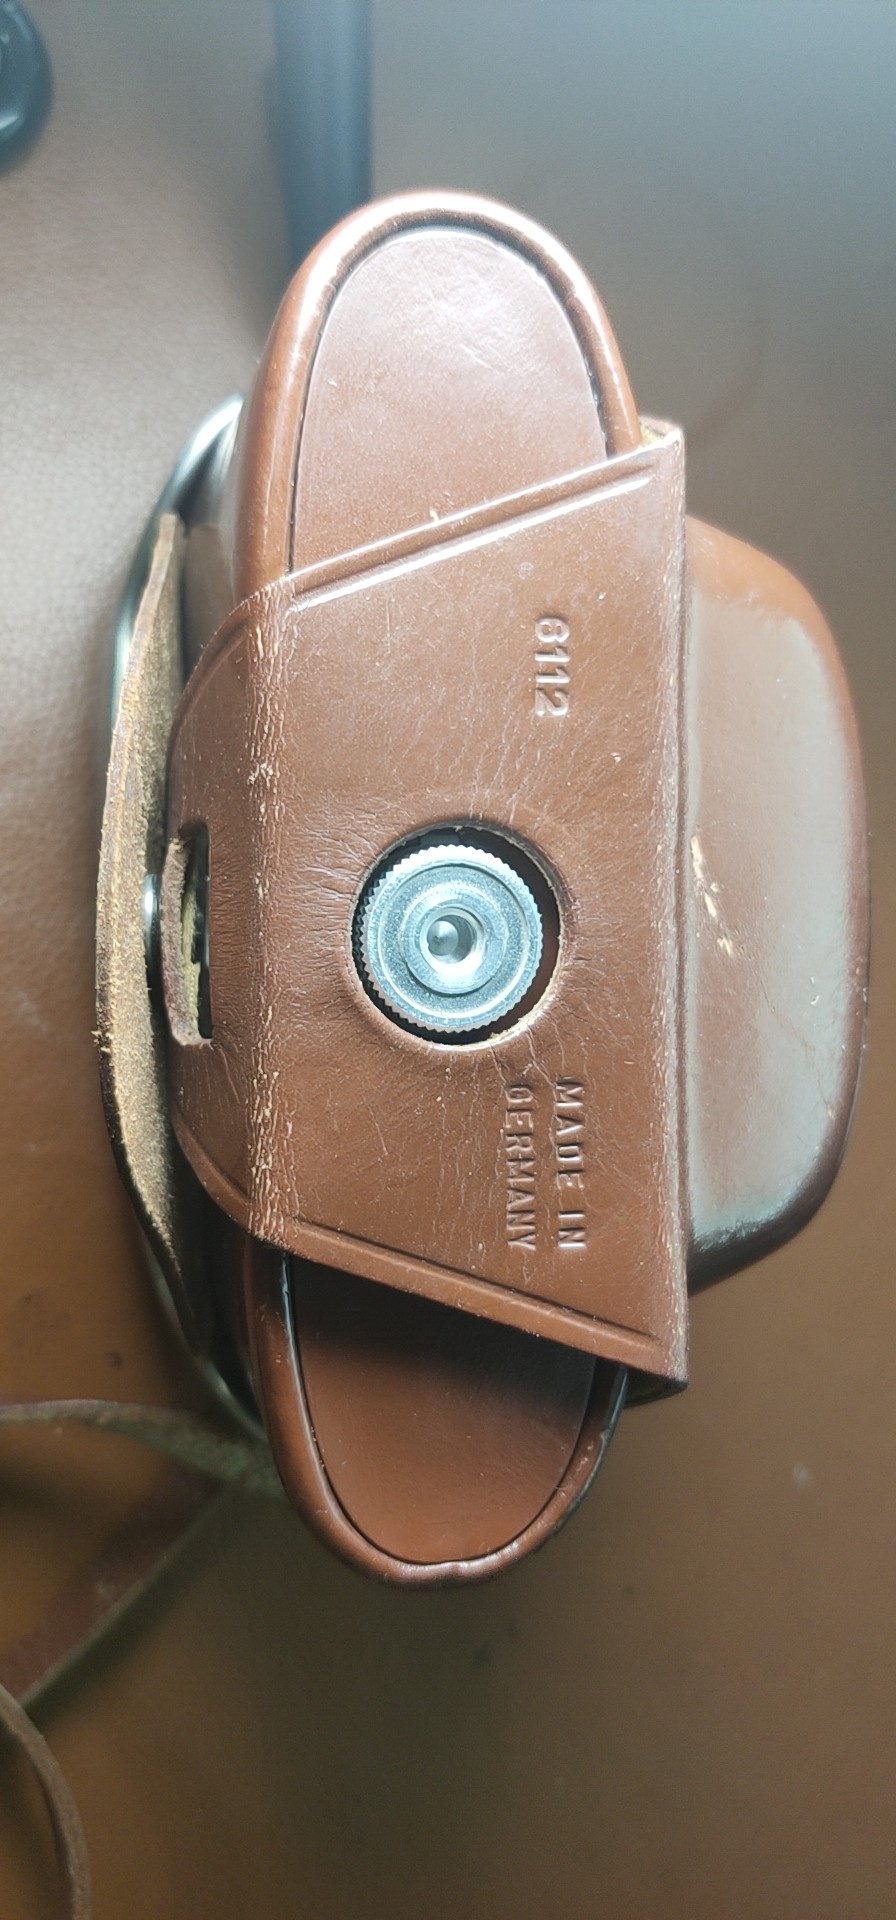 德国产爱克发 agfa silette旁轴相机全金属机械古董原型机